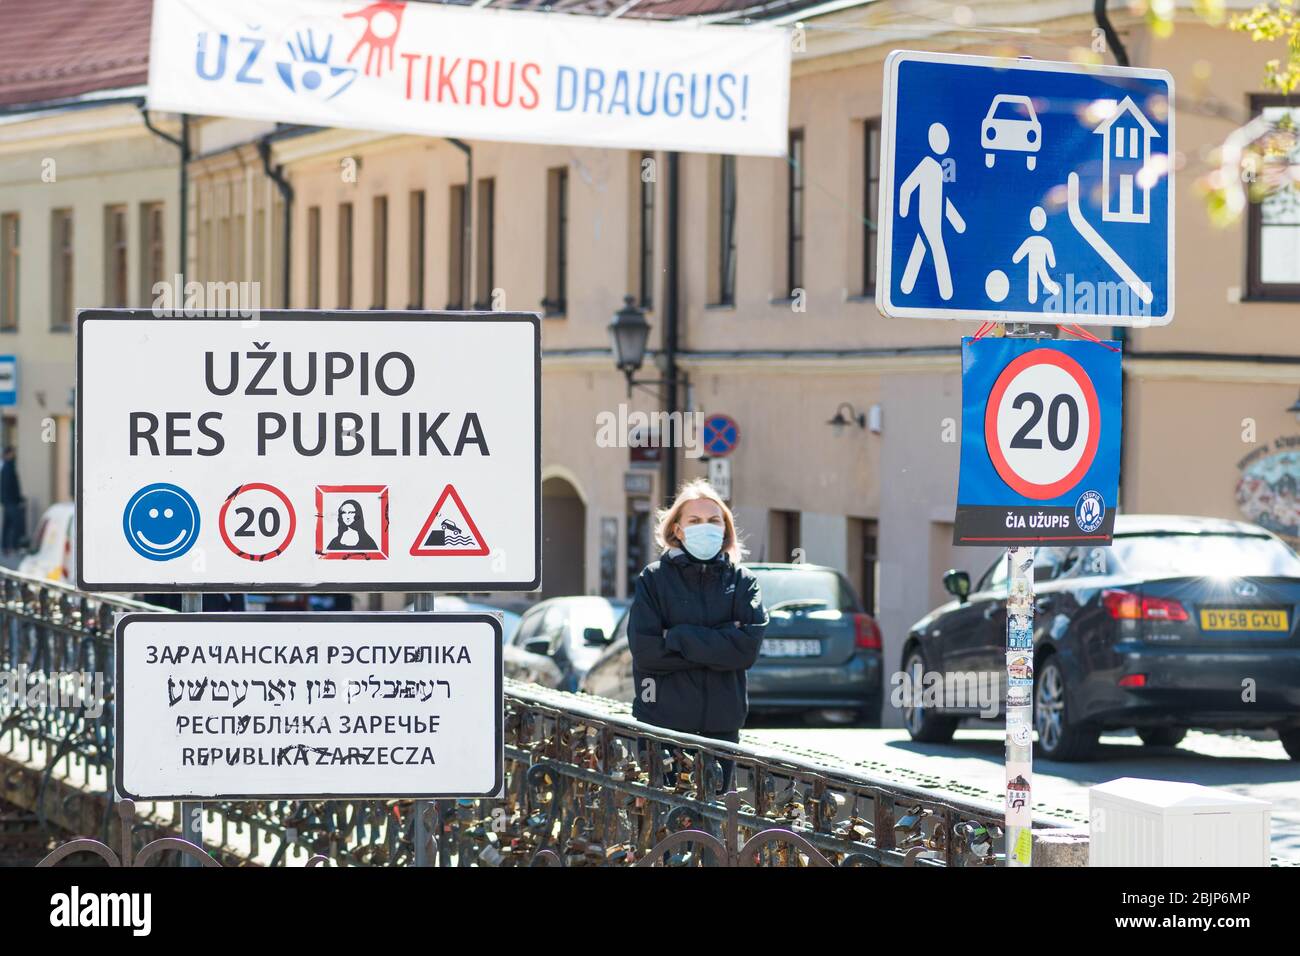 Ragazza bionda con maschera a Repubblica di Uzupis, un quartiere di Vilnius, la capitale della Lituania, Europa, in gran parte situato nel centro storico di Vilnius Foto Stock